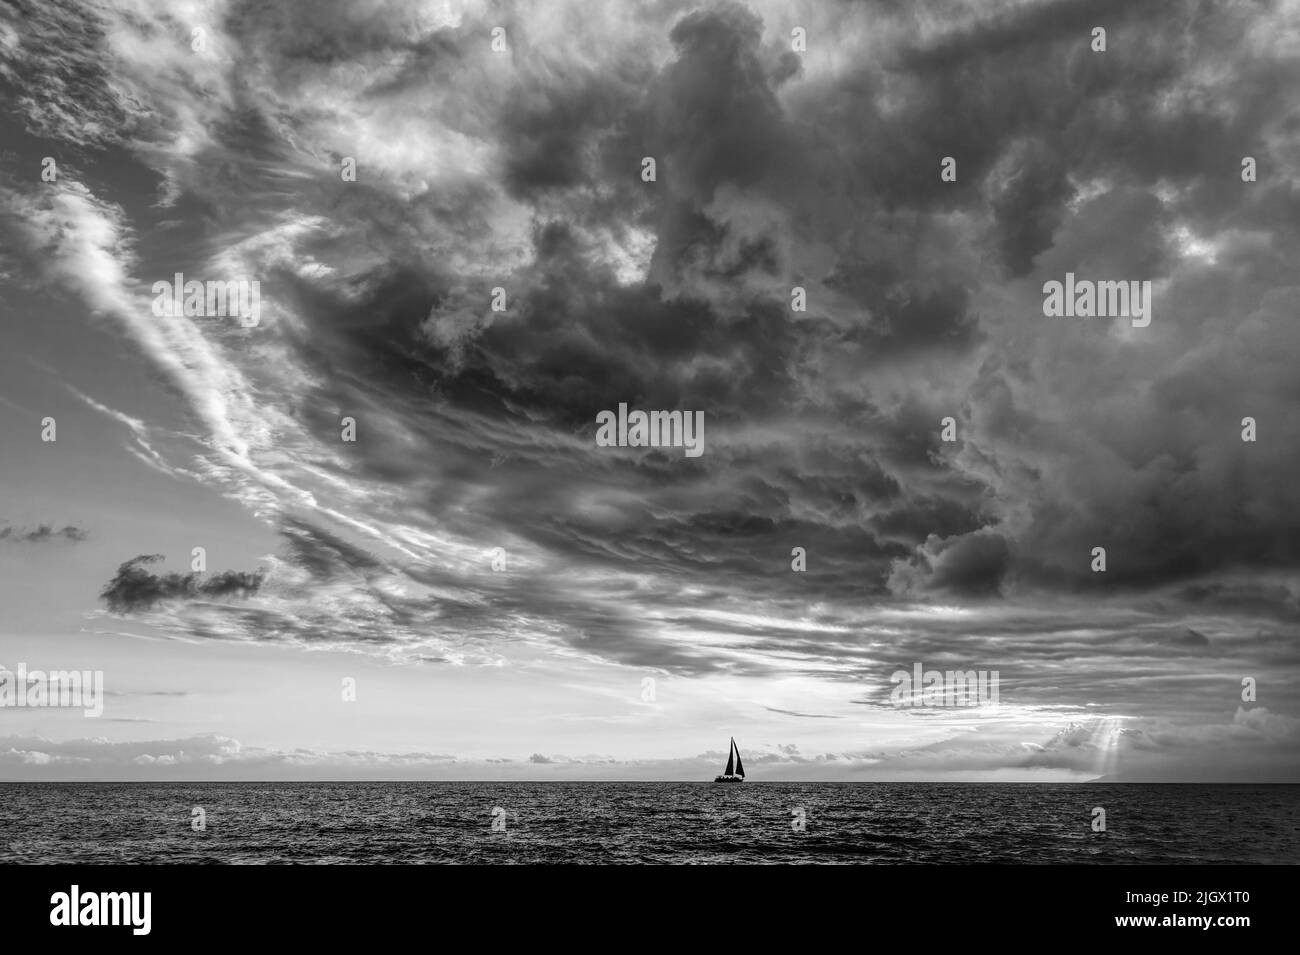 Una tormenta se avecina mientras Un pequeño barco se mueve a lo largo del horizonte del océano en blanco y negro Foto de stock